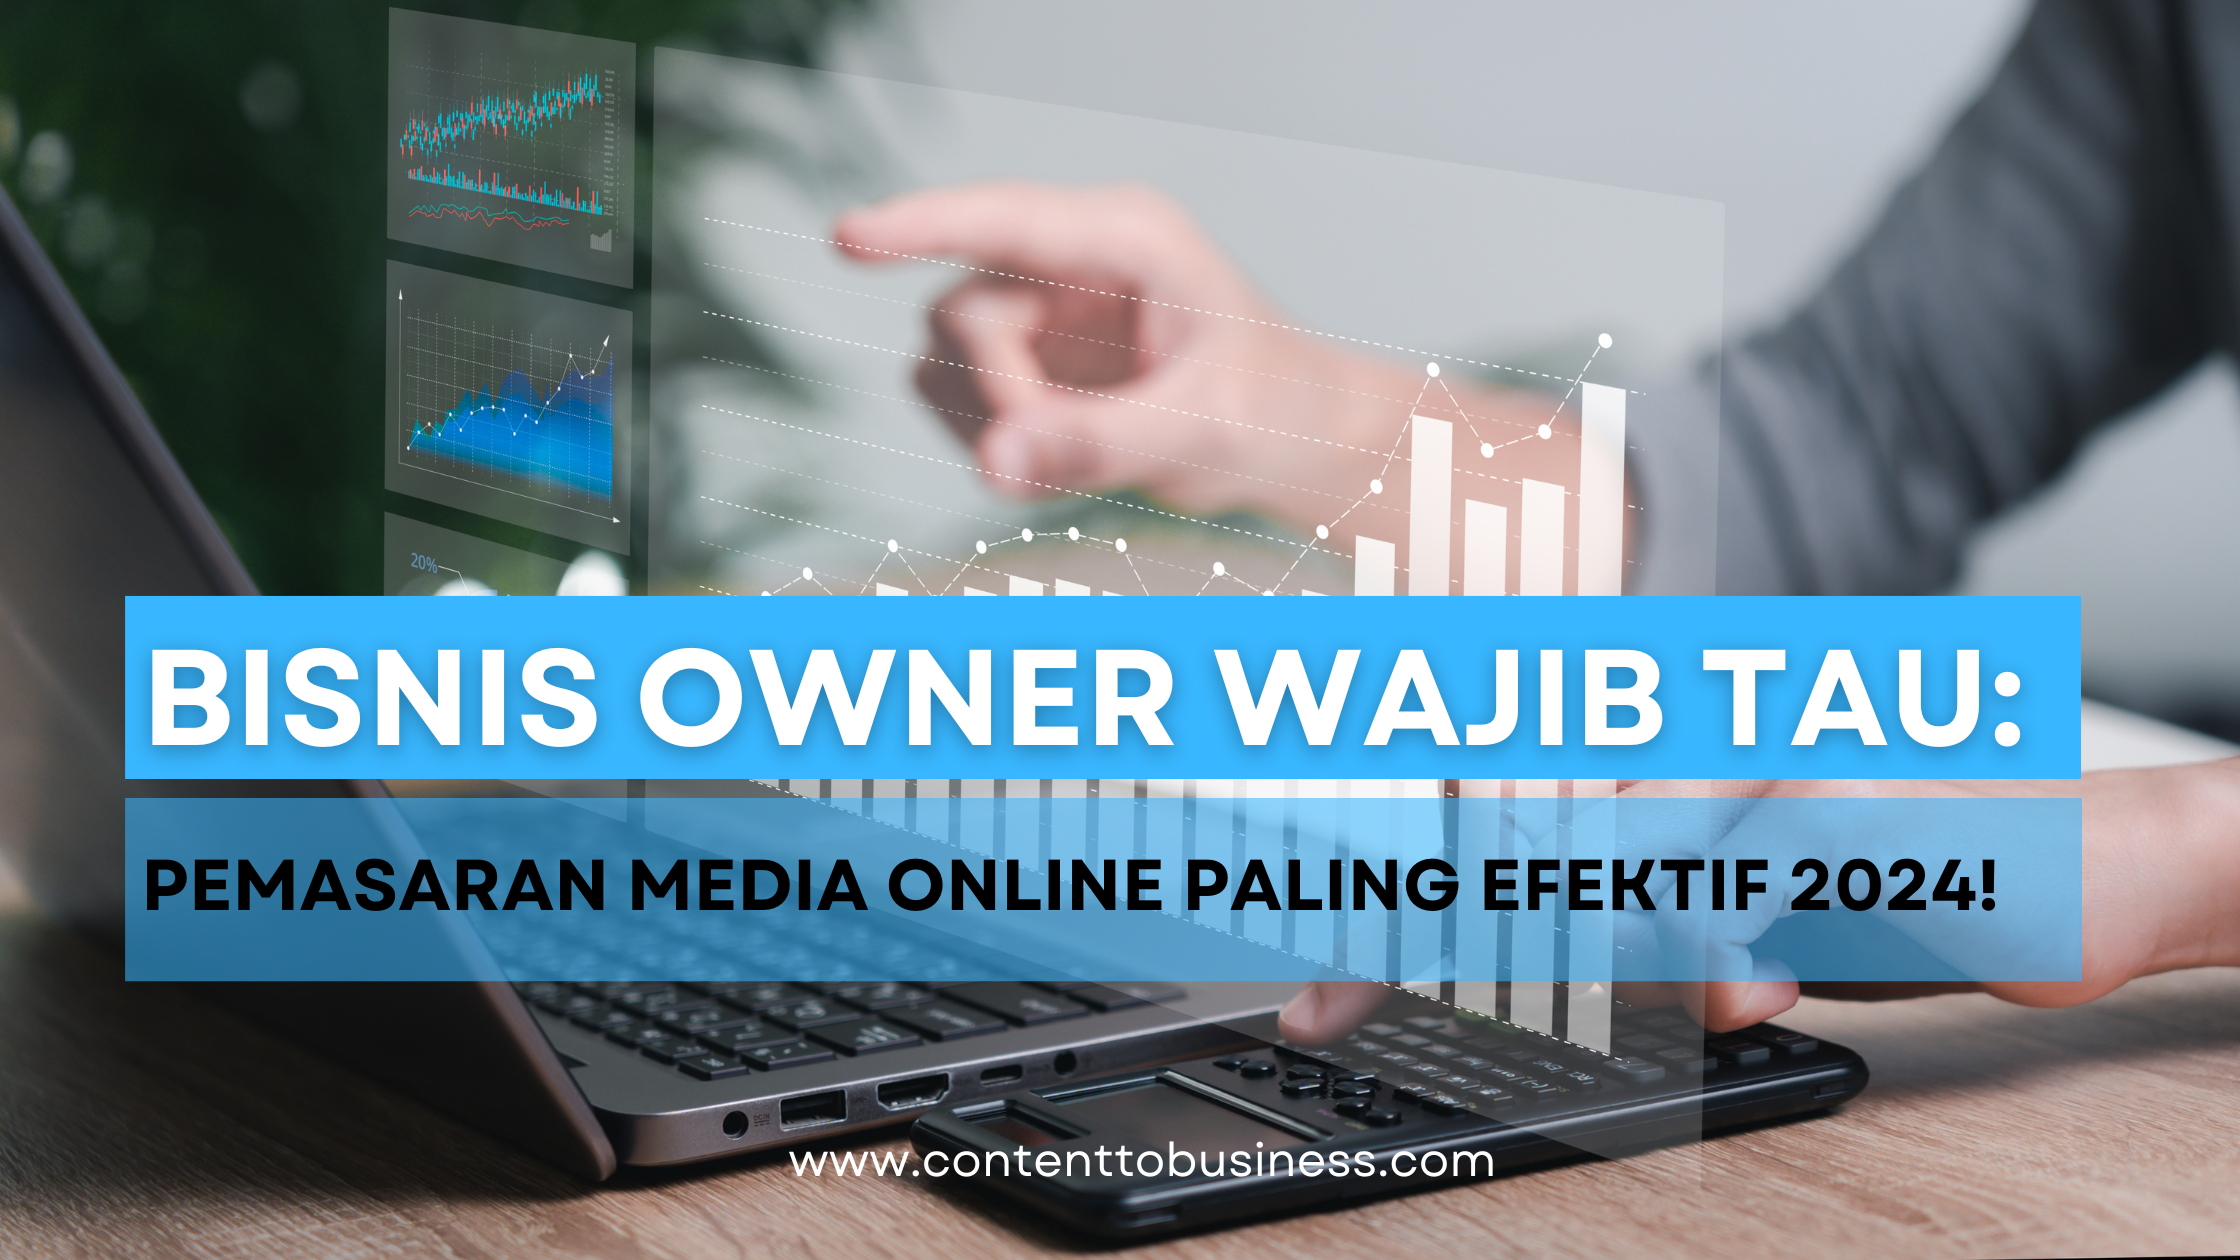 Bisnis Owner Wajib Tau: Pemasaran Media Online Paling Efektif 2024!